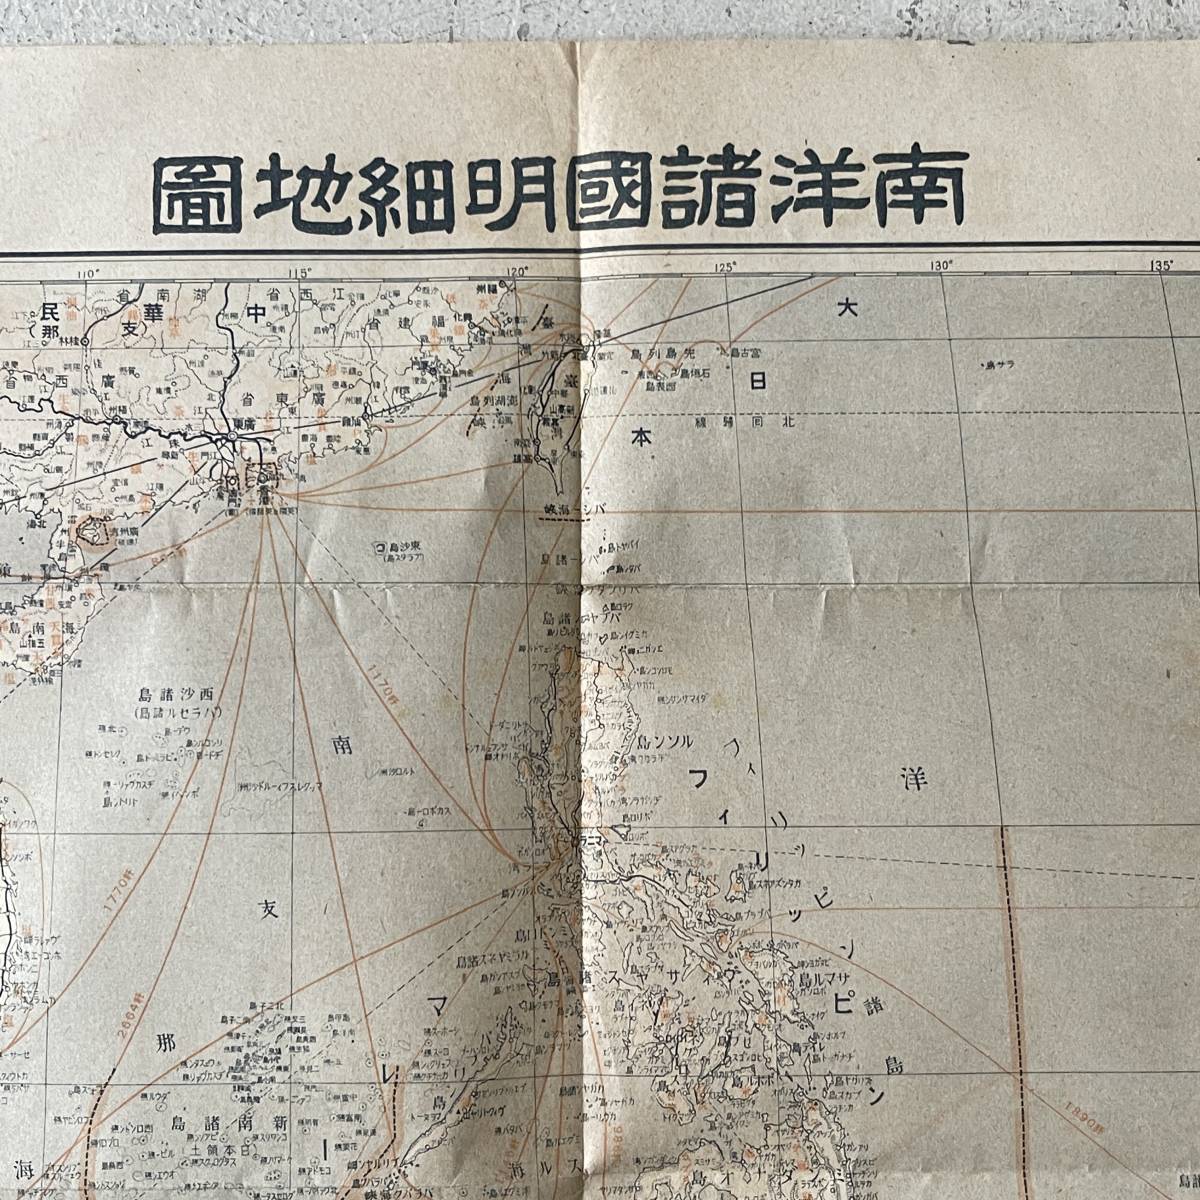 戦前 古地図 A9 キング付録 太平洋戦争地図 昭和17年 講談社 裏面 南洋諸国明細地図の画像10